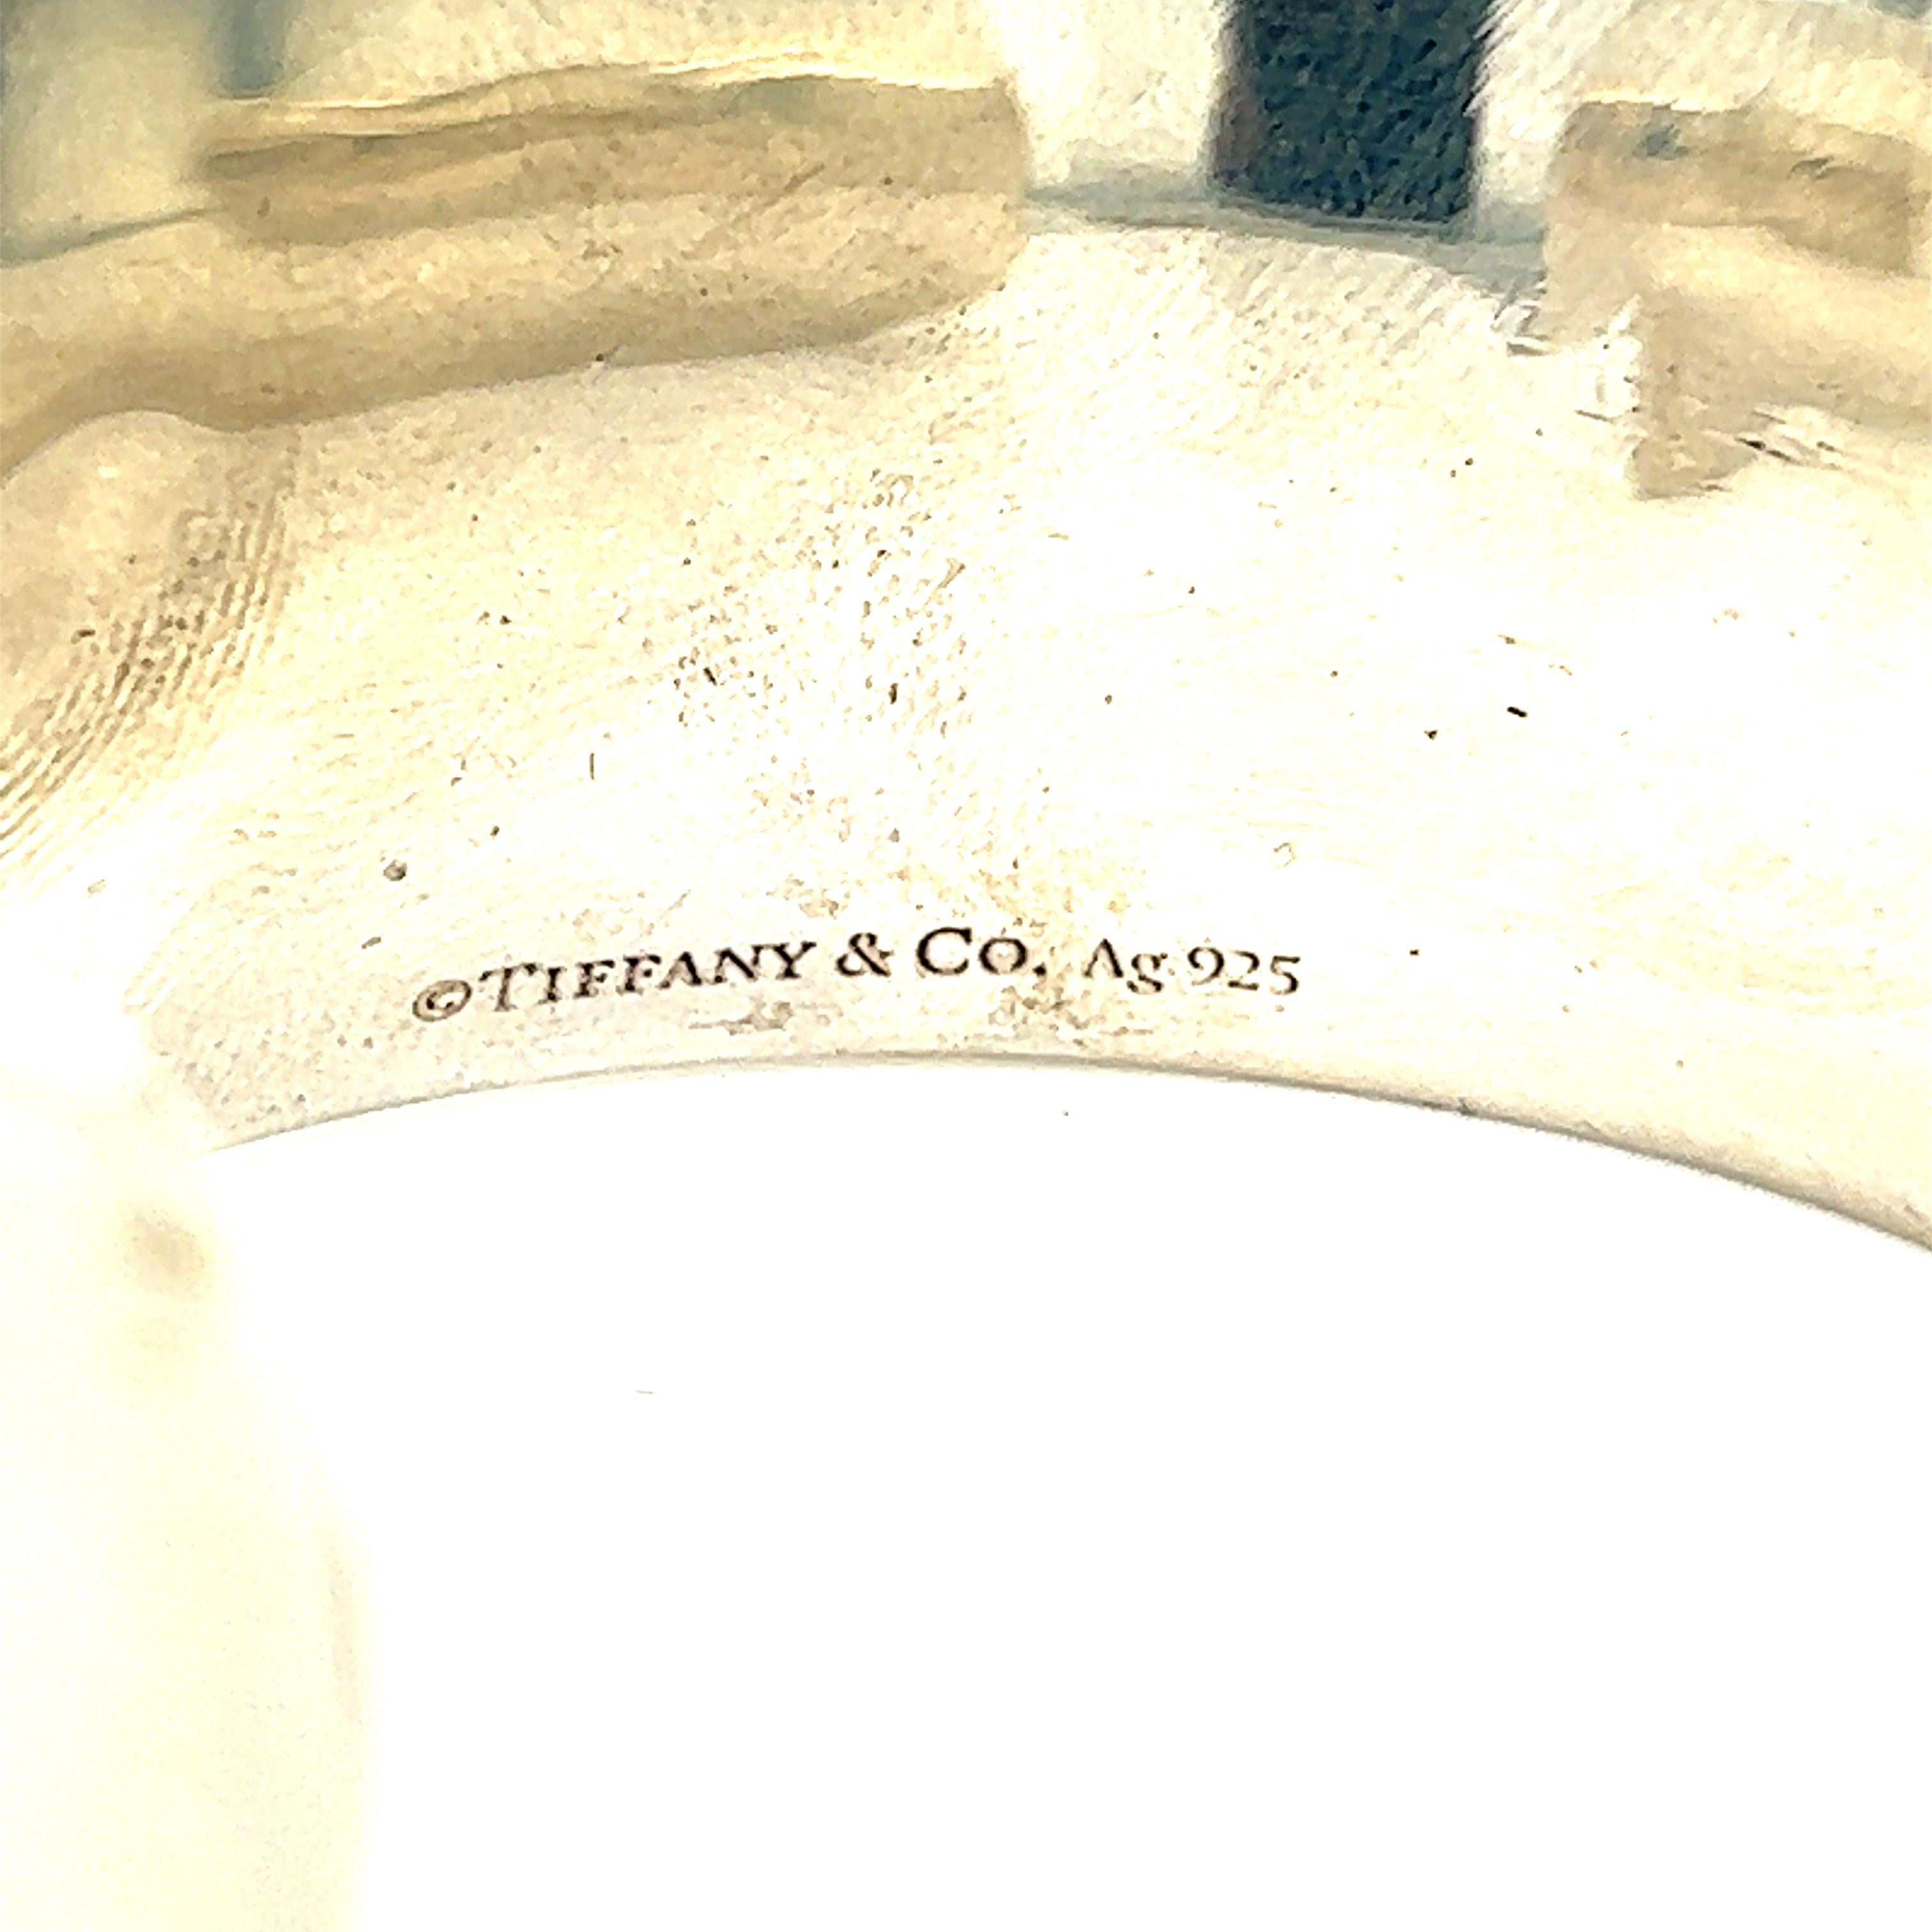 2001 tiffany & co 925 cuff